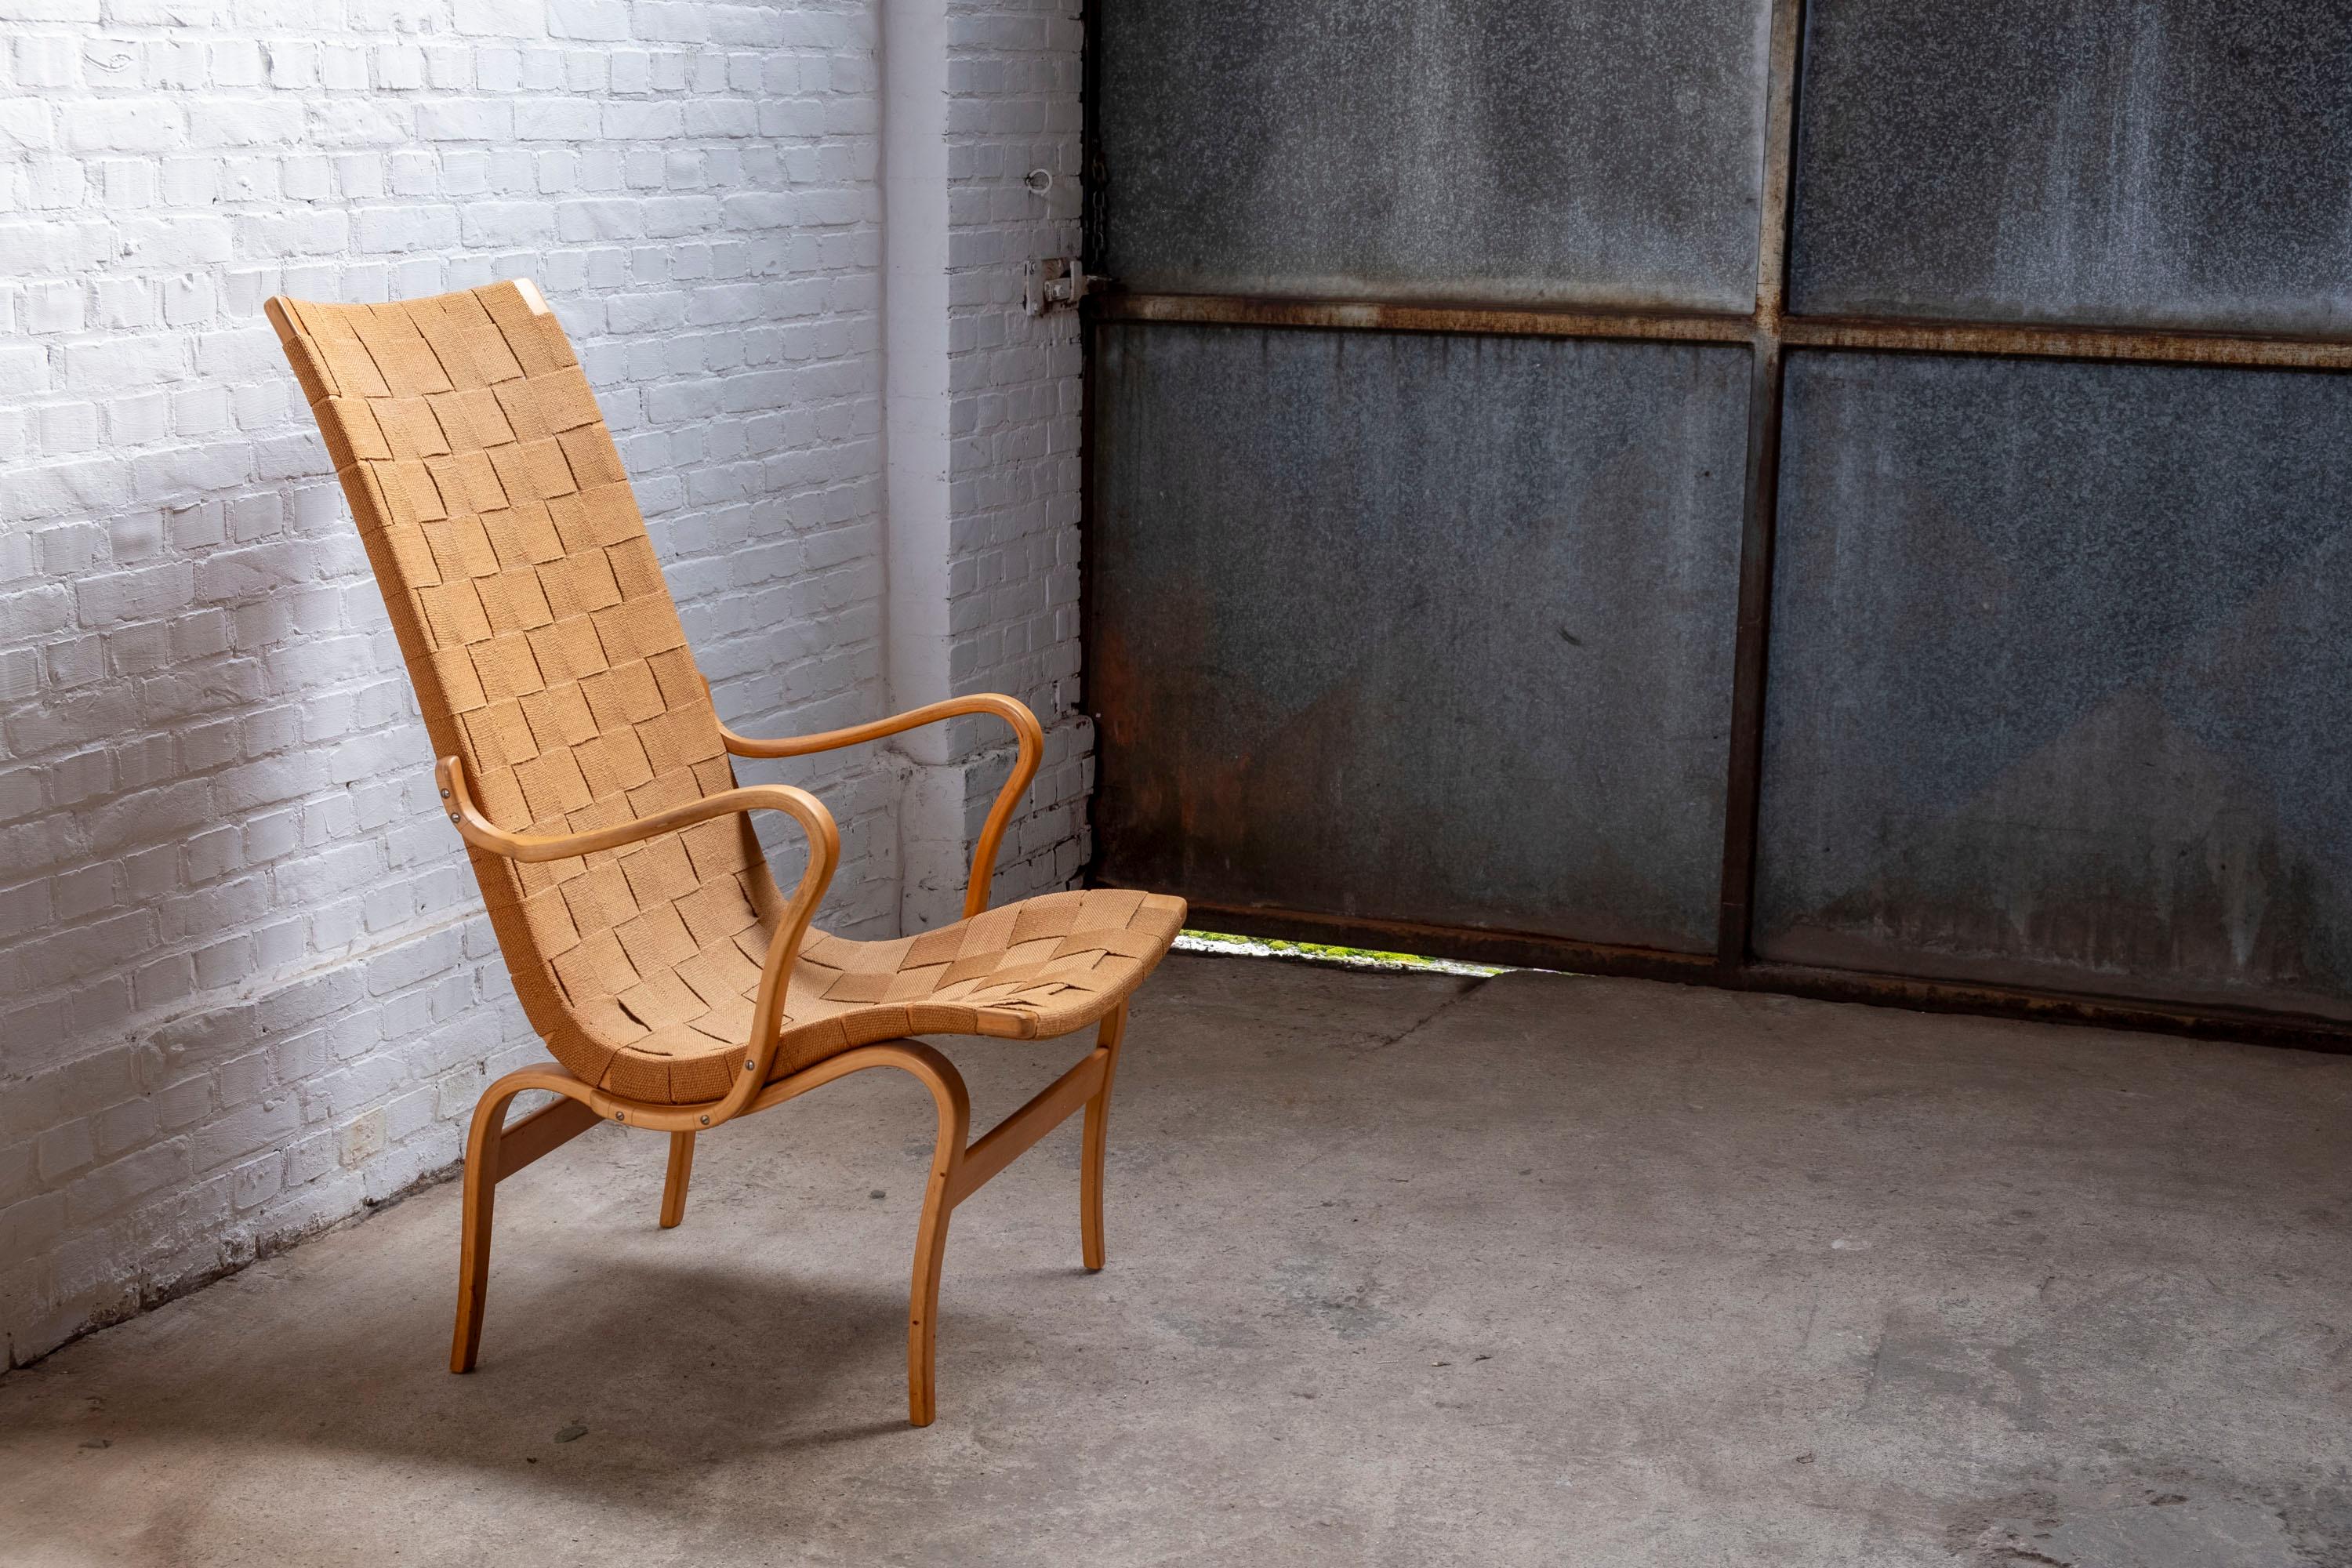 Rare chaise longue Eva à haut dossier, conçue par Bruno Mathsson en 1941.
Cet exemplaire est un exemple étonnamment bien conservé de la première édition de cette chaise et a été produit au cours de la première année de production, en 1941, par Karl